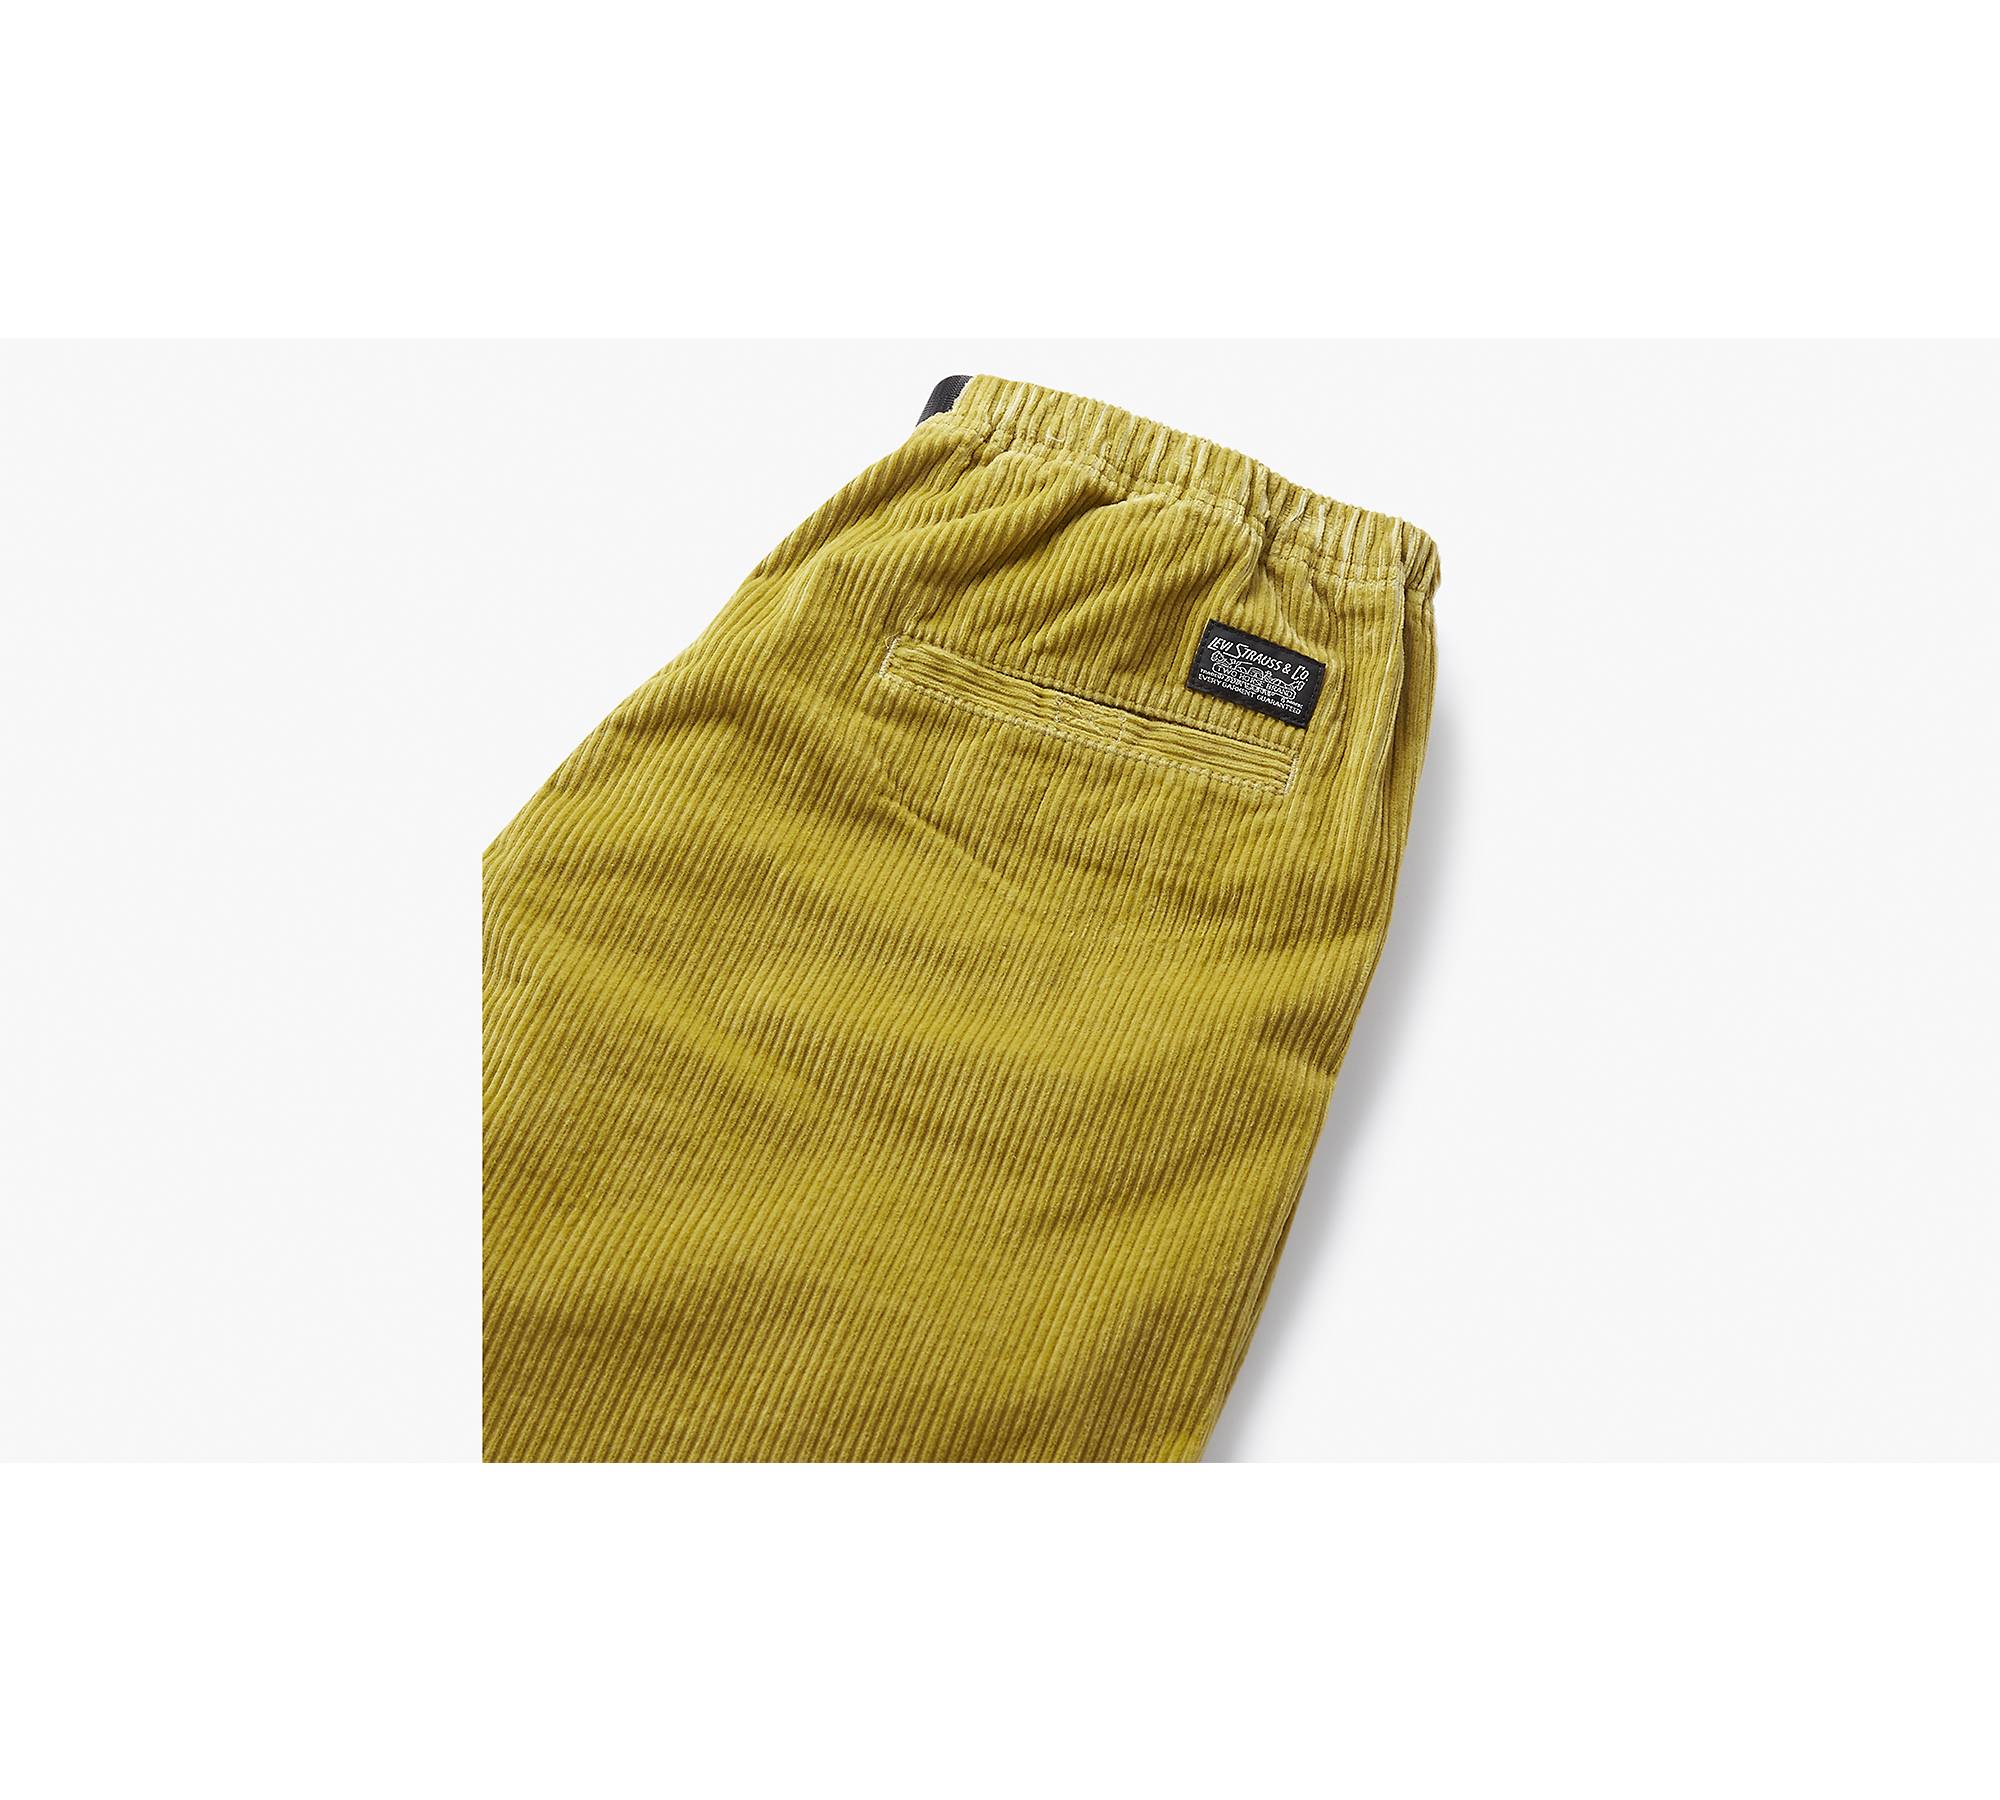 Levi's® Skate Quick Release Corduroy Men's Pants - Green | Levi's® US